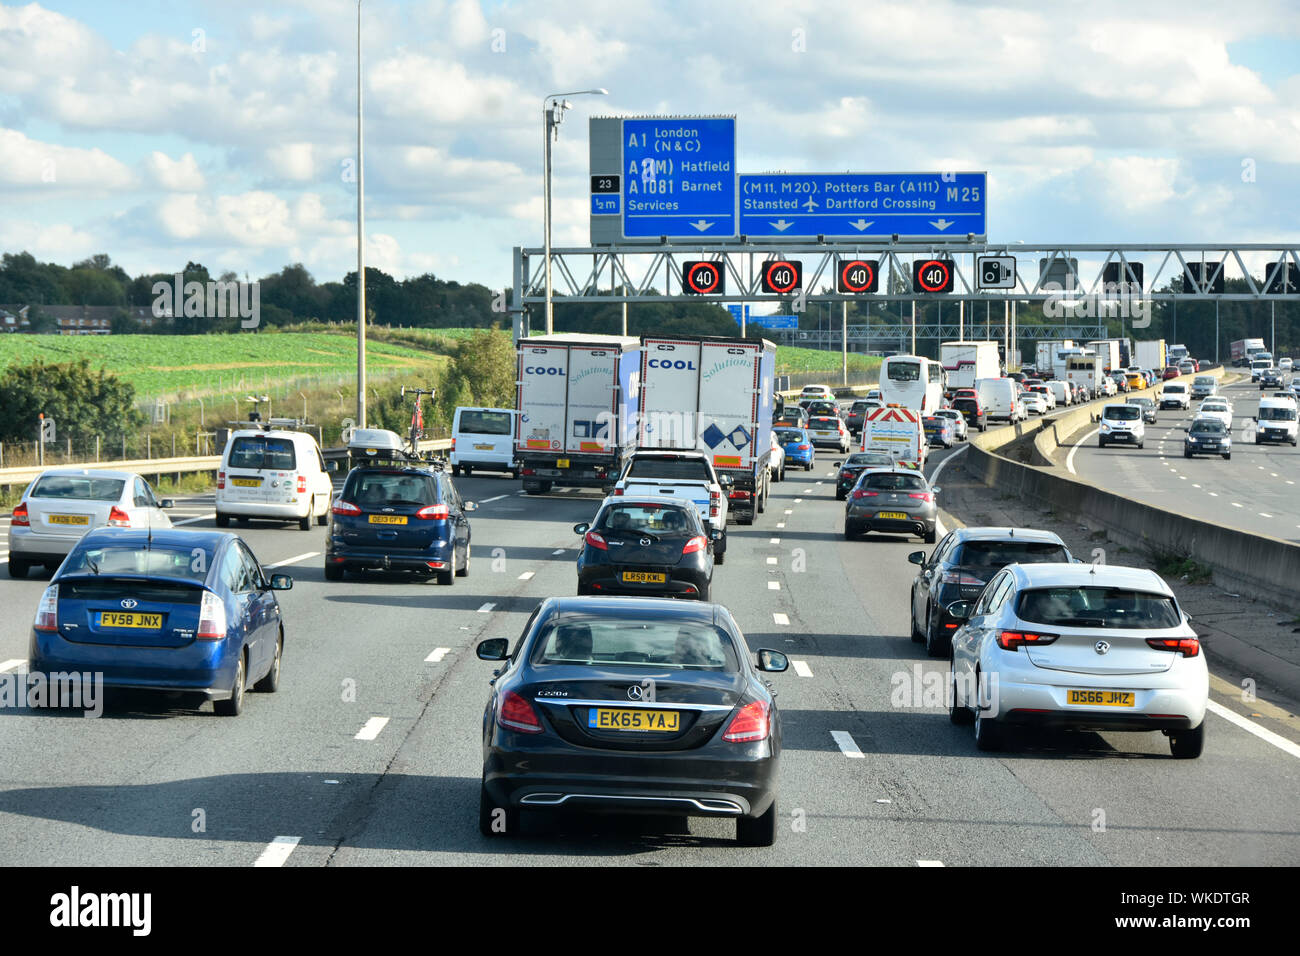 Verkehr M25 Autobahnkurve & blaue Route Straßenschild über der Gantry elektronische Schilder mit variabler Geschwindigkeit, eingestellt auf 40 MPH Freitag PM Rush Hour London England UK Stockfoto